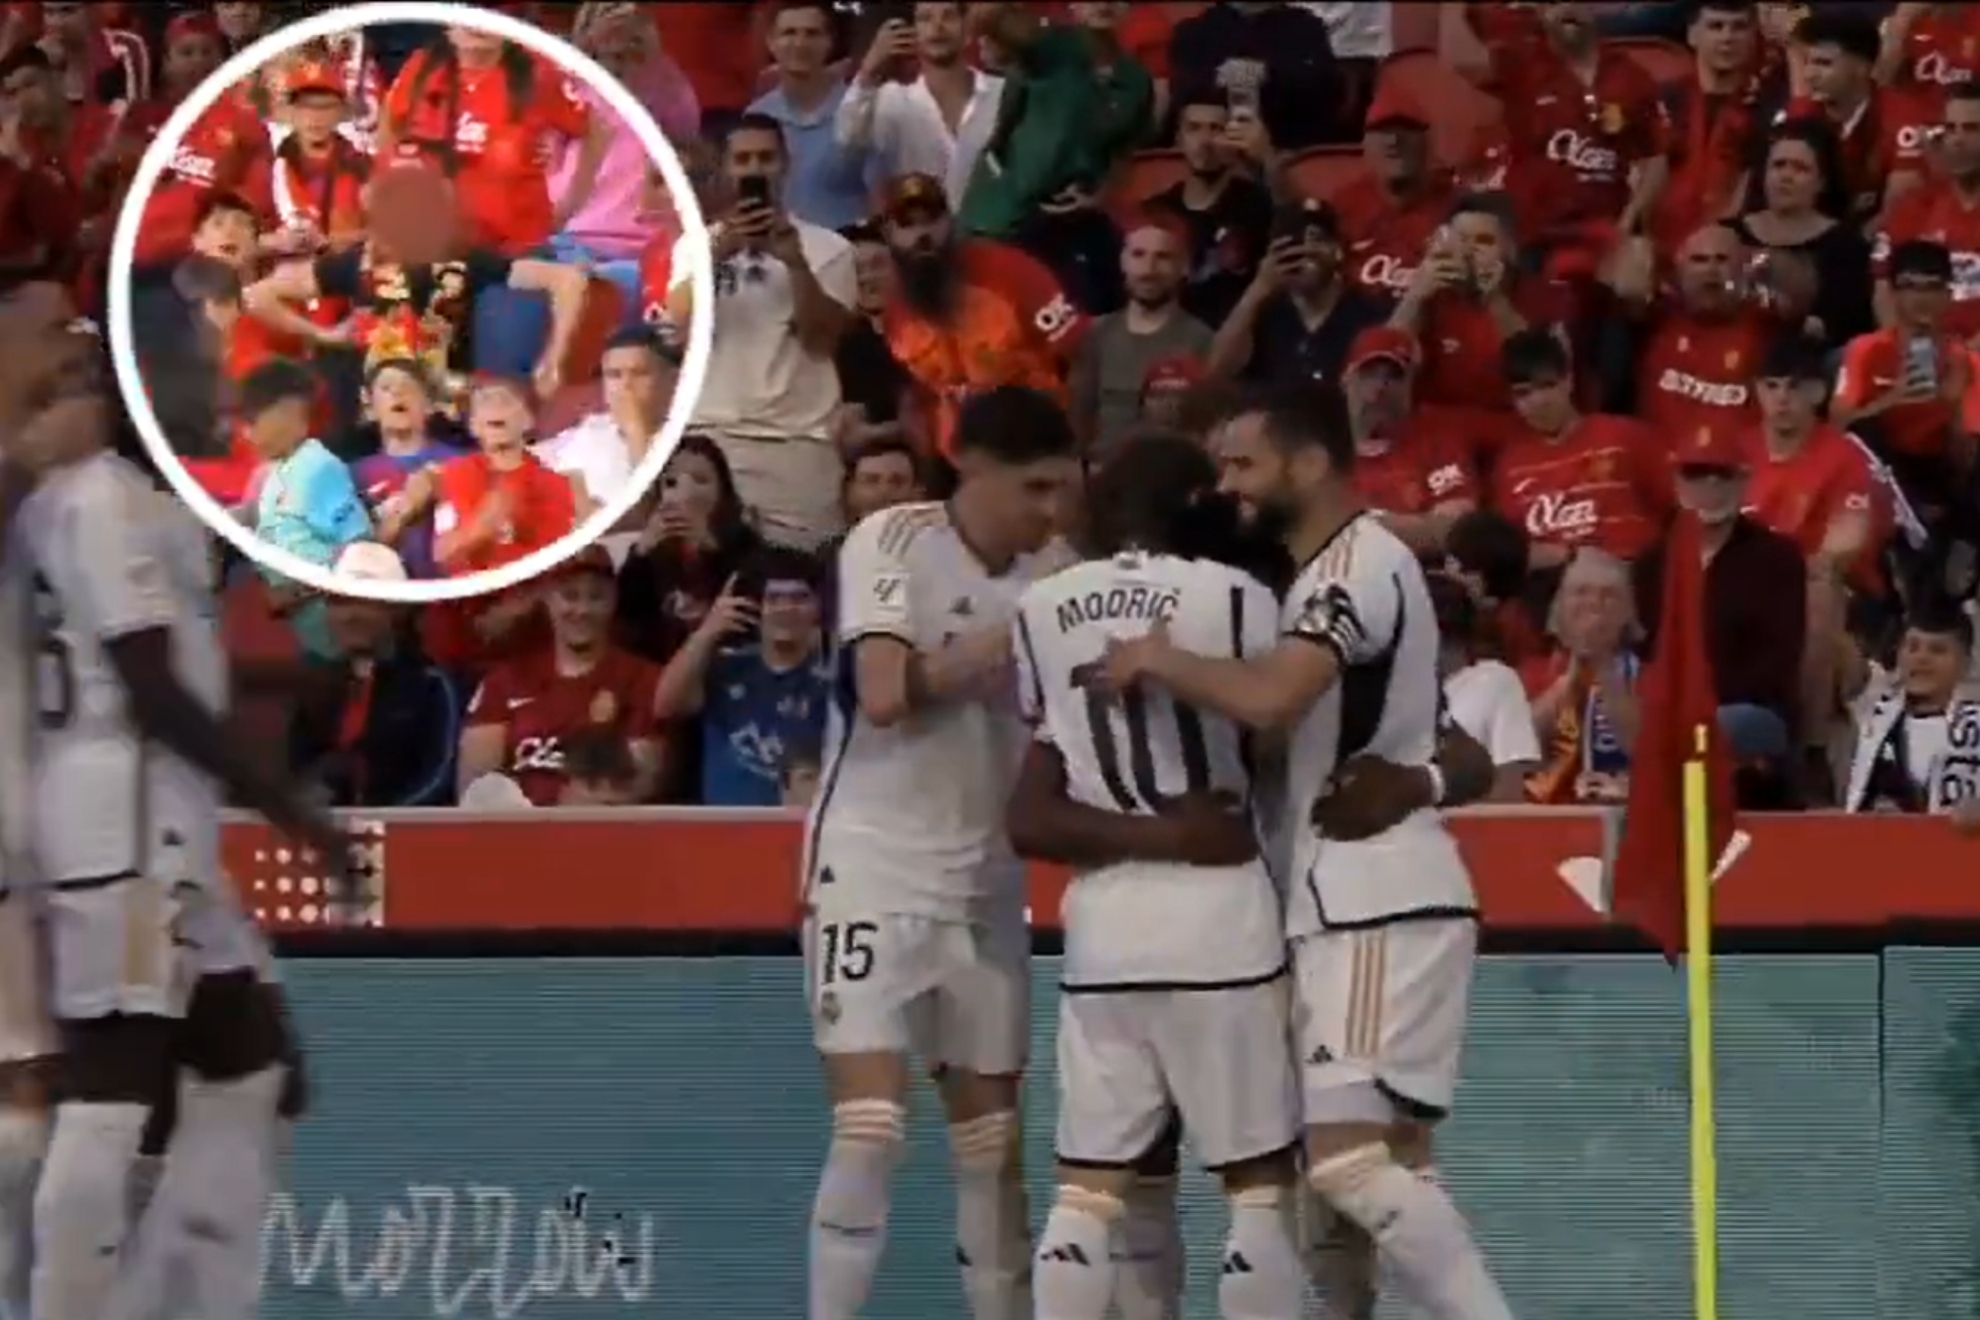 El Real Mallorca reacciona ante el gesto racista tras el gol de Tchouam�ni: El club no tolerar� ninguna manifestaci�n de racismo